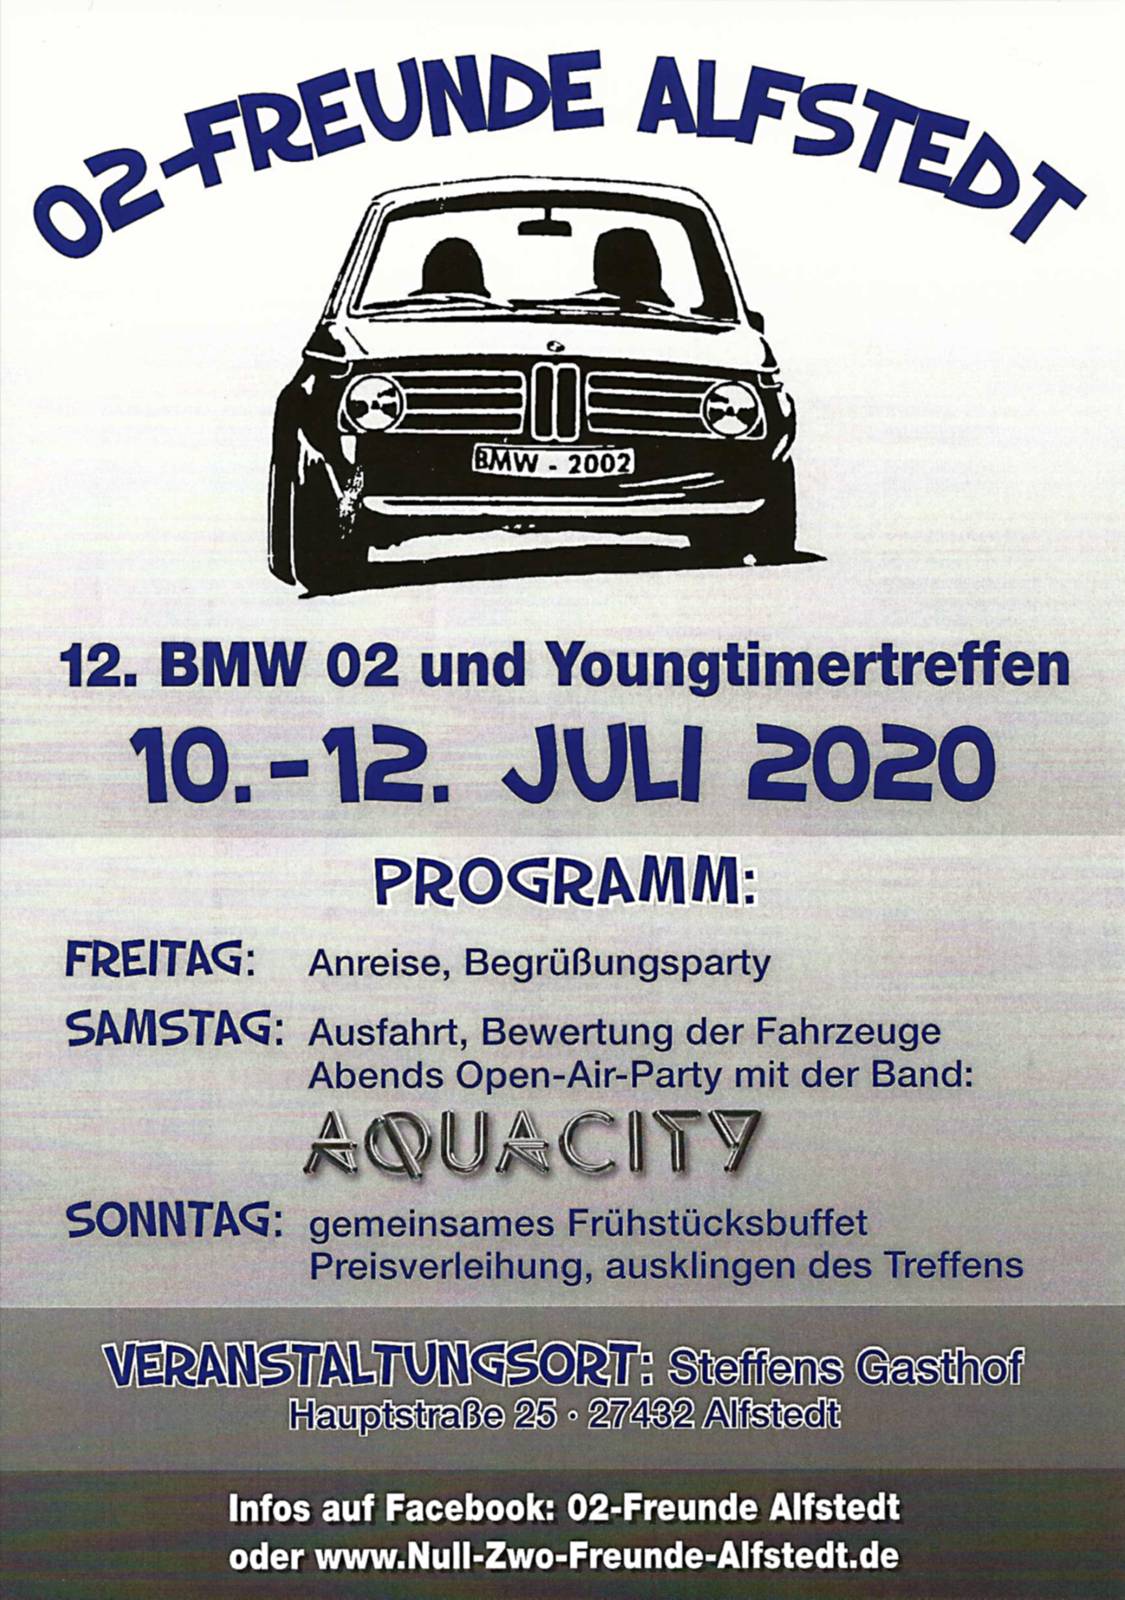 Ahrend02Tuning - BMW02, Youngtimmer treffen - 10. bis 12. Juli 2020, Steffens Gasthof in Alfstedt.BMW02 und Youngtimer Fahrzeuge. 